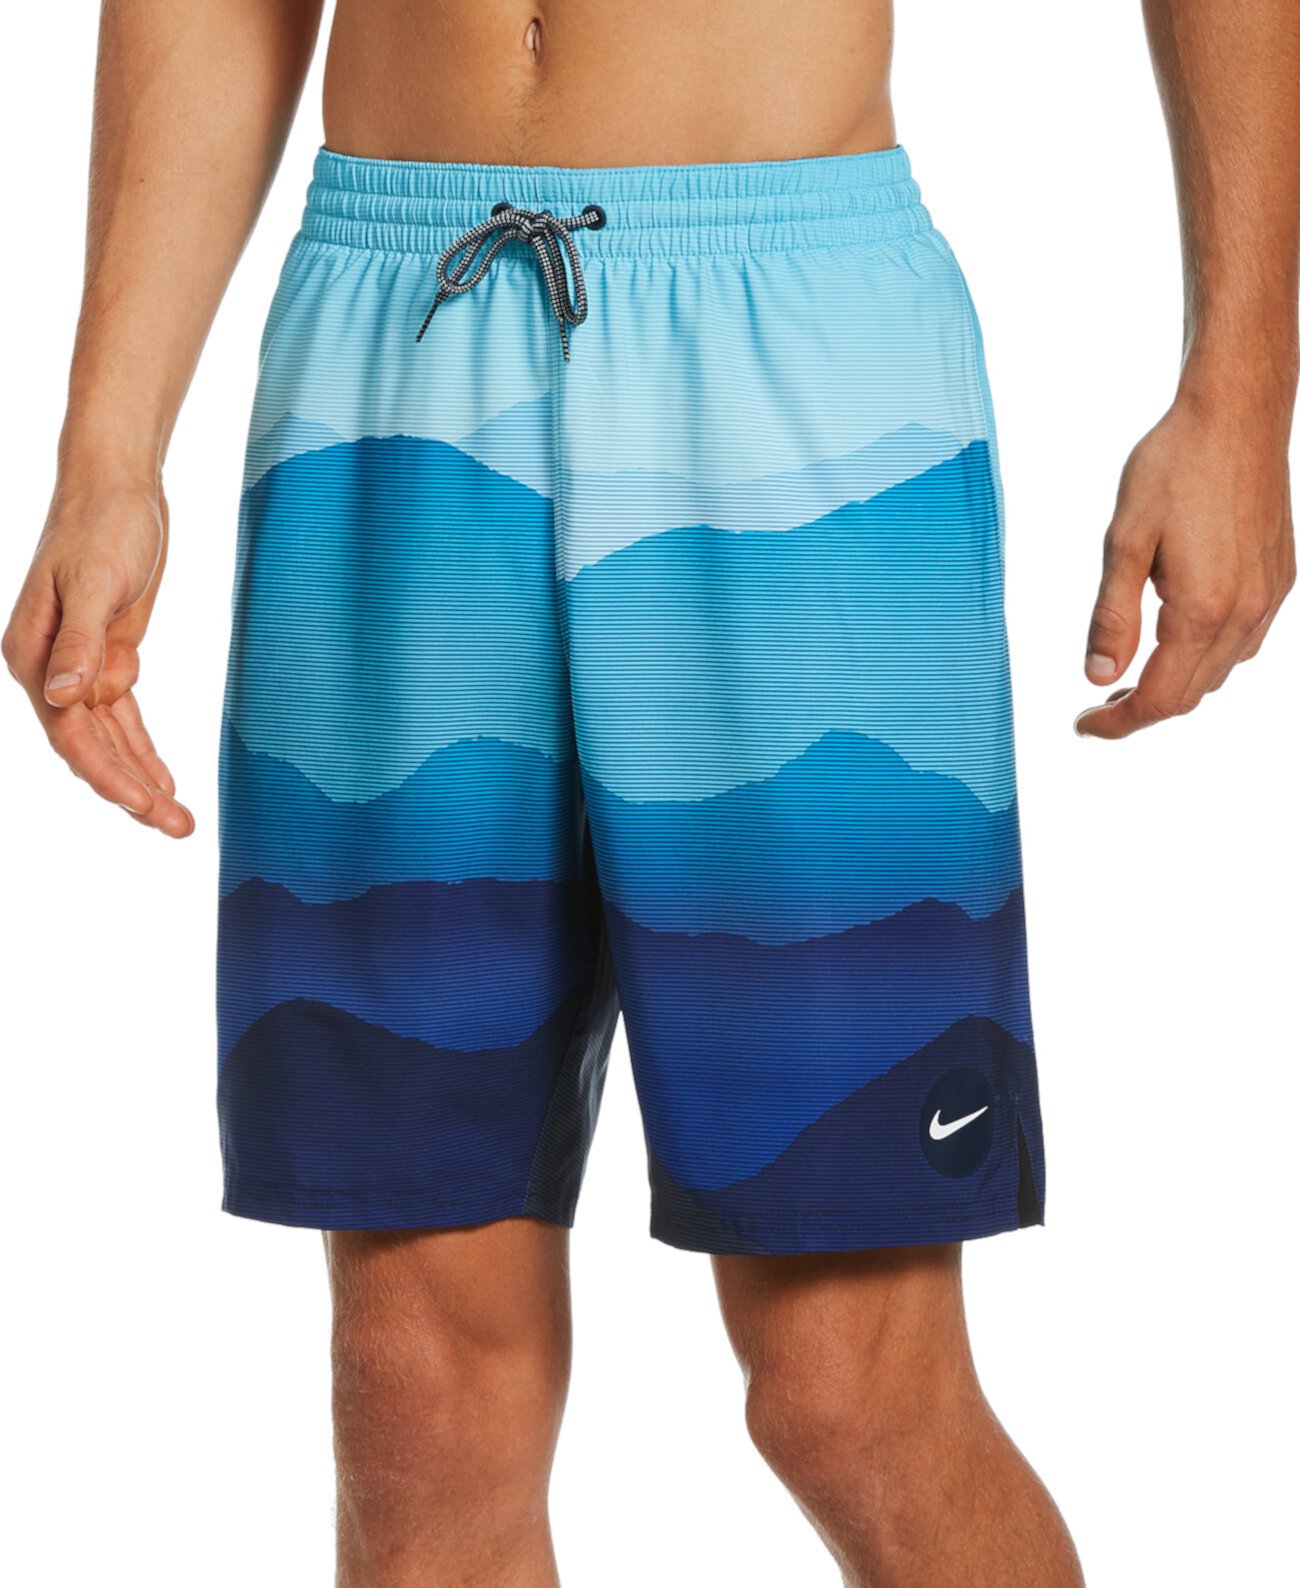 Мужские шорты для волейбола 9 дюймов с пейзажем большого и высокого роста Nike